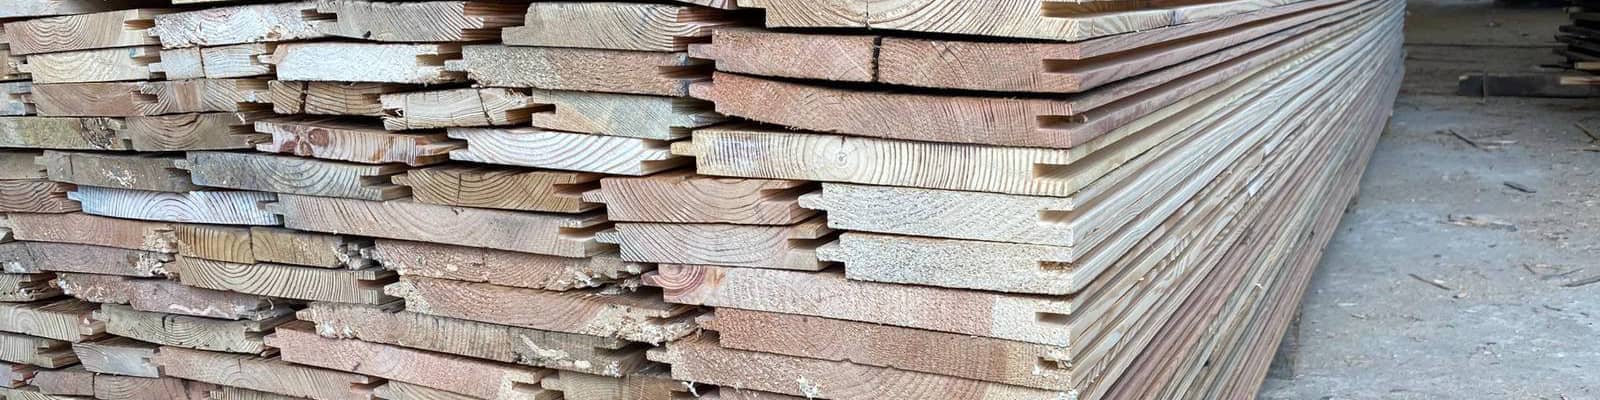 Skup drewna rozbiórkowego :: rozbiórka stodół drewnianych